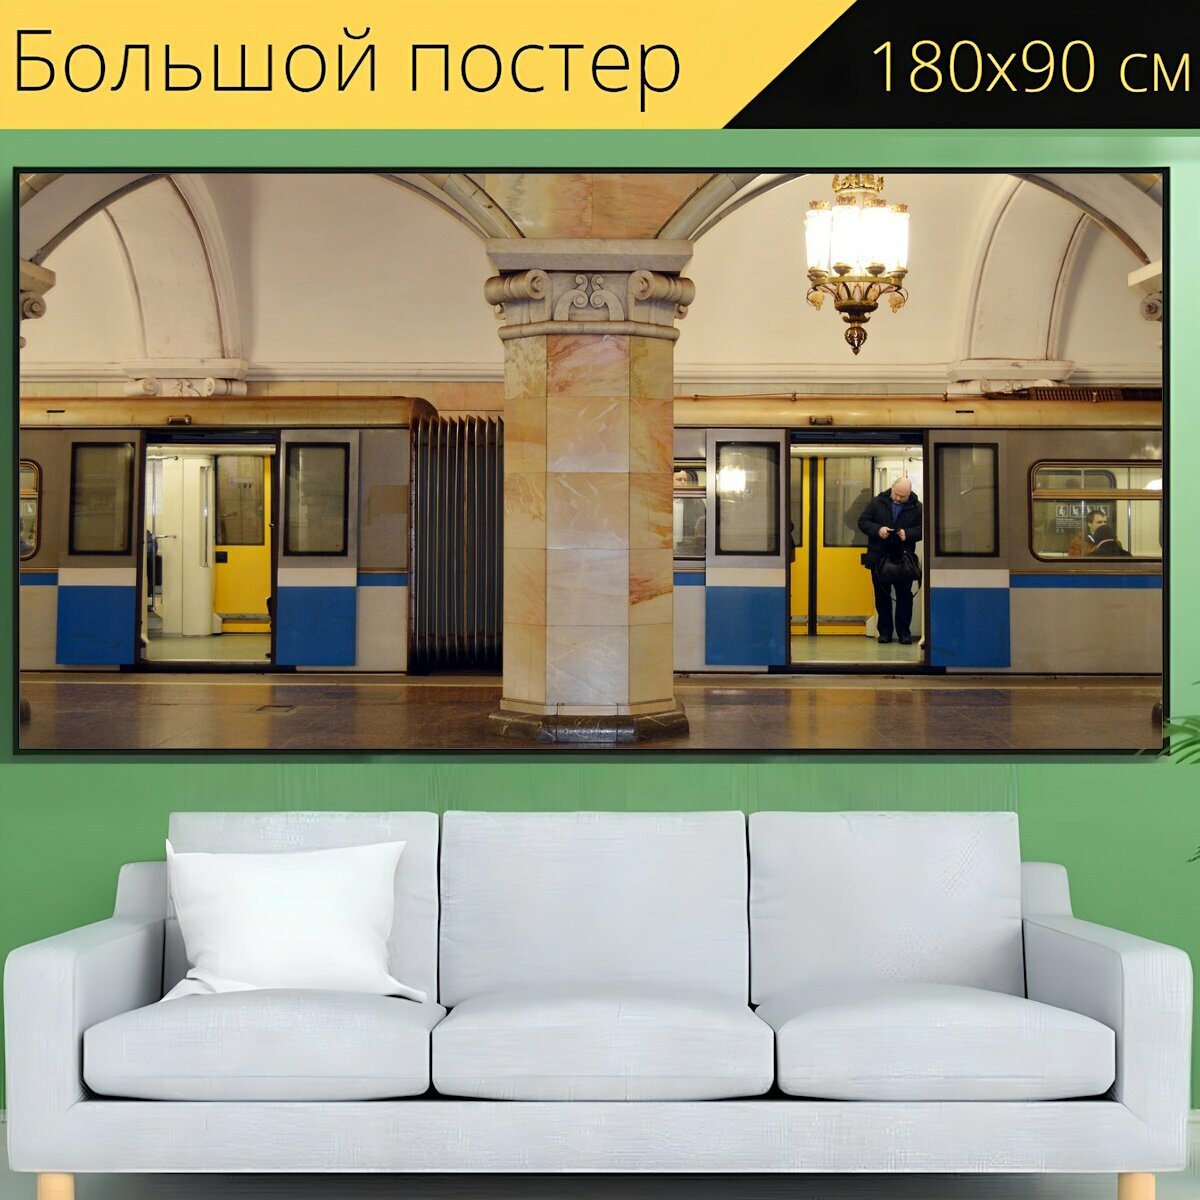 Большой постер "Метро, метрополитен, поезд" 180 x 90 см. для интерьера